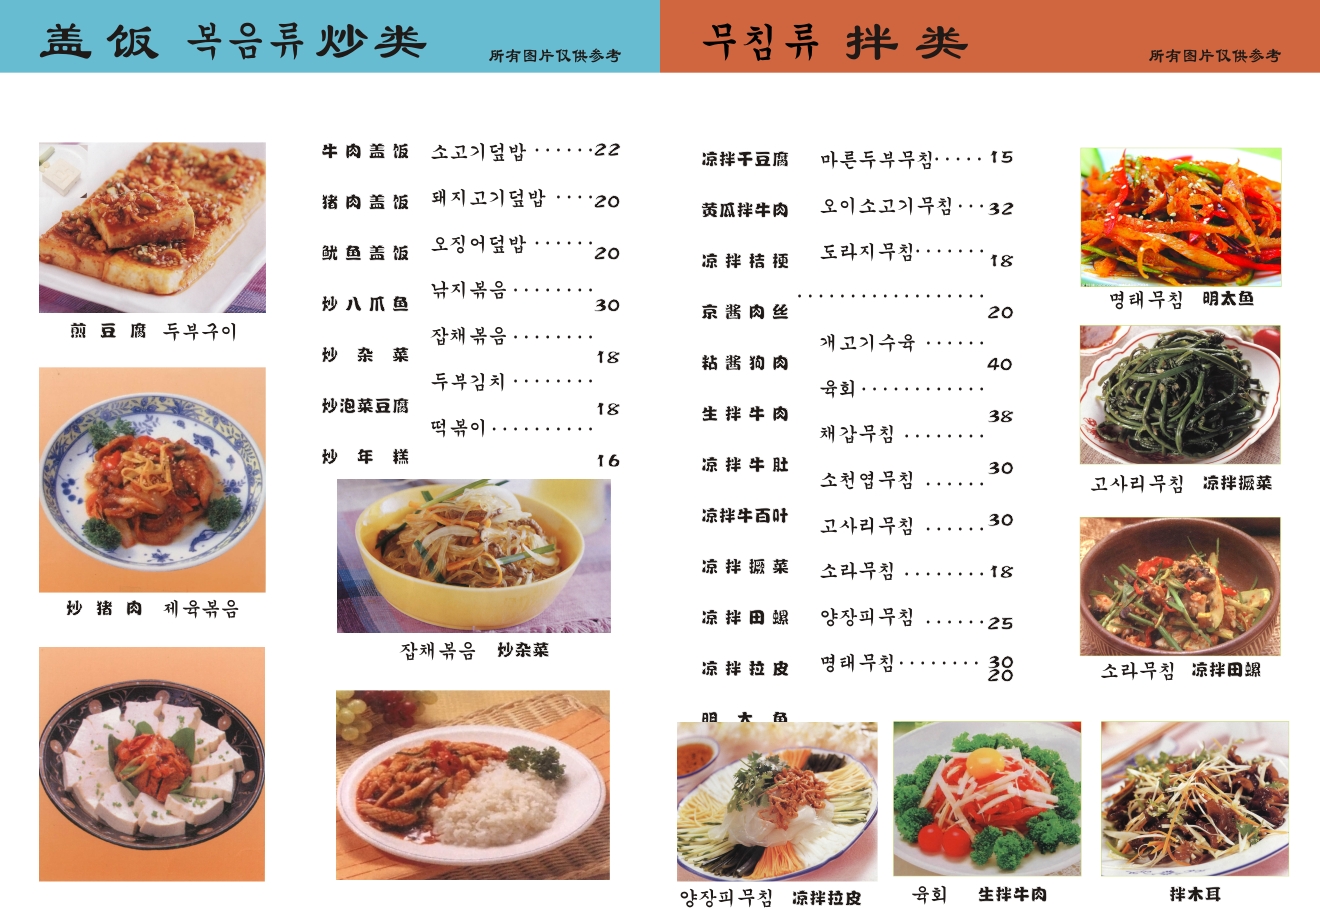 韩国料理 烧烤店菜单 韩国菜谱 韩式烧烤 满座菜谱